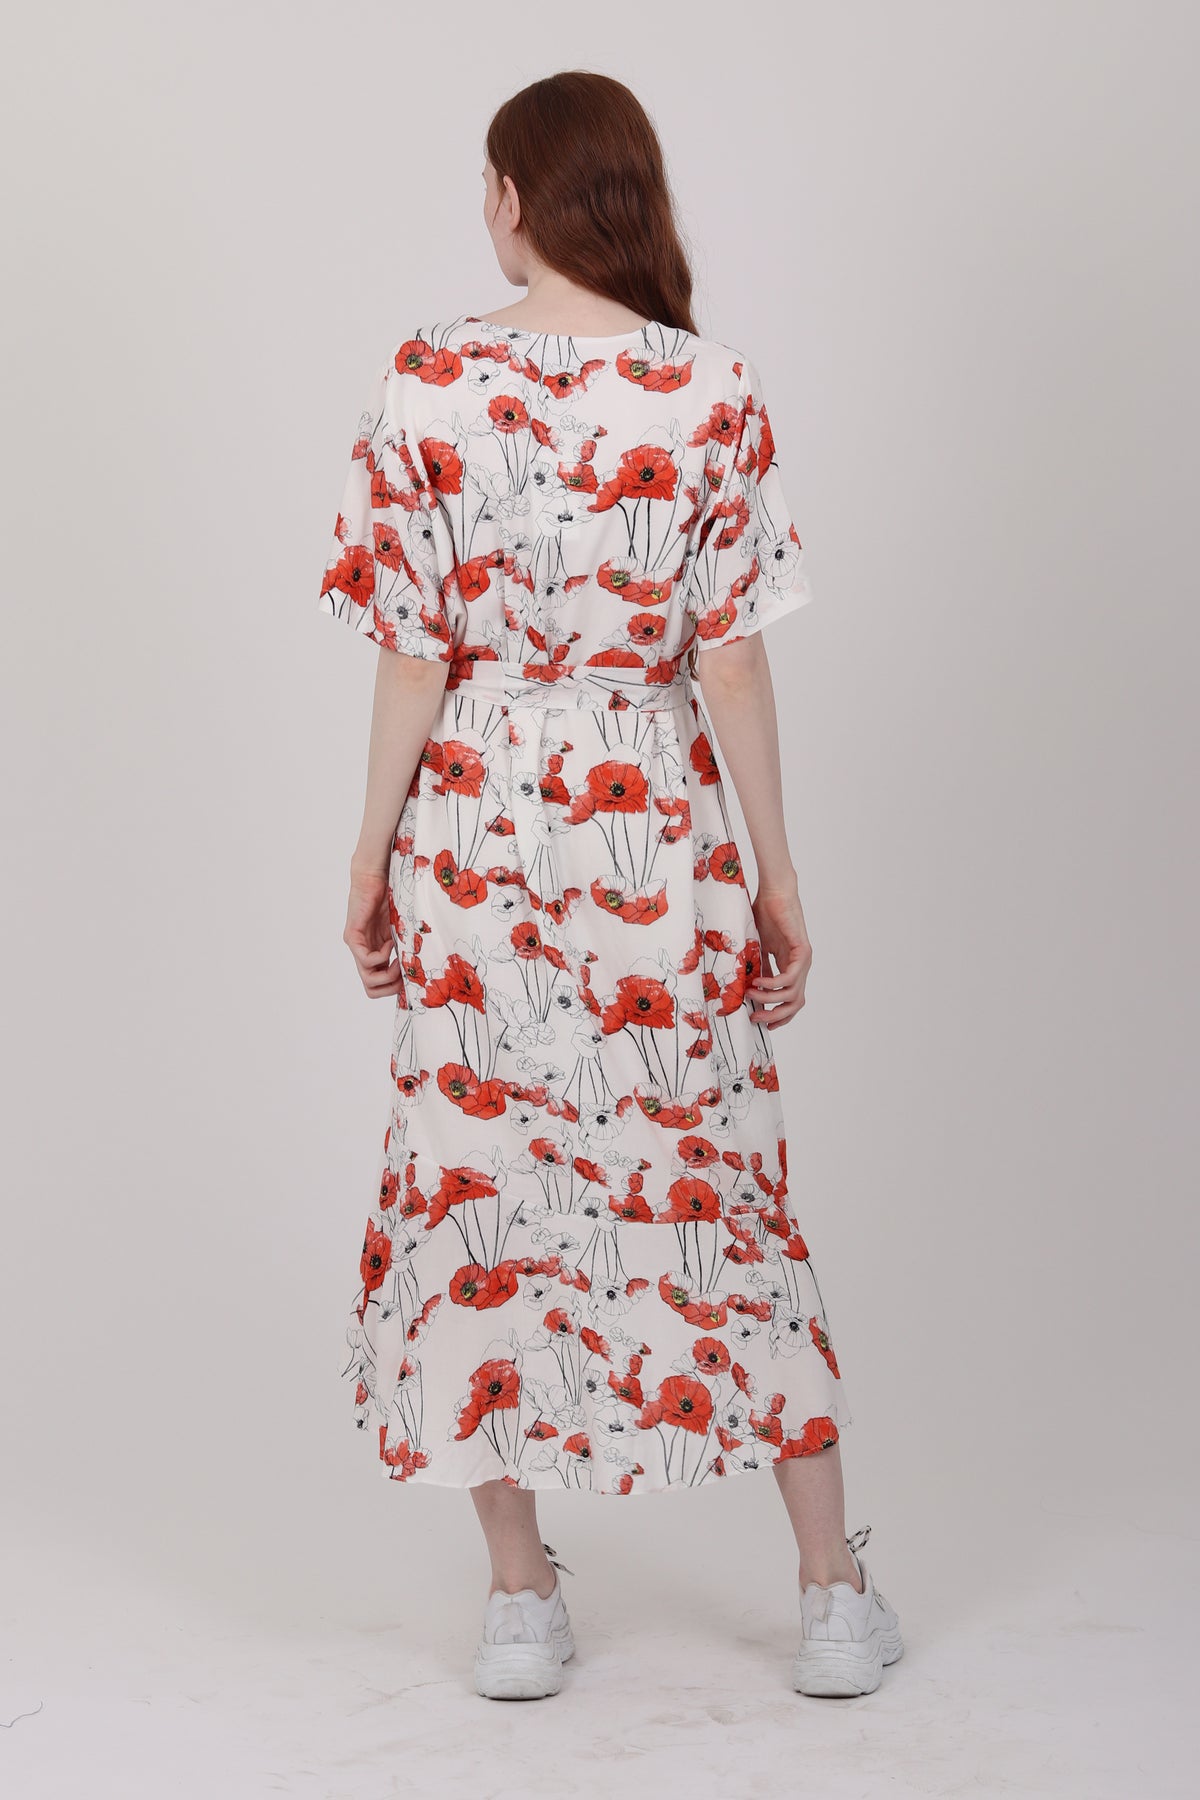 JOYFUL kjole - White w/flower print - Veronica B. Vallenes - Kjoler - VILLOID.no